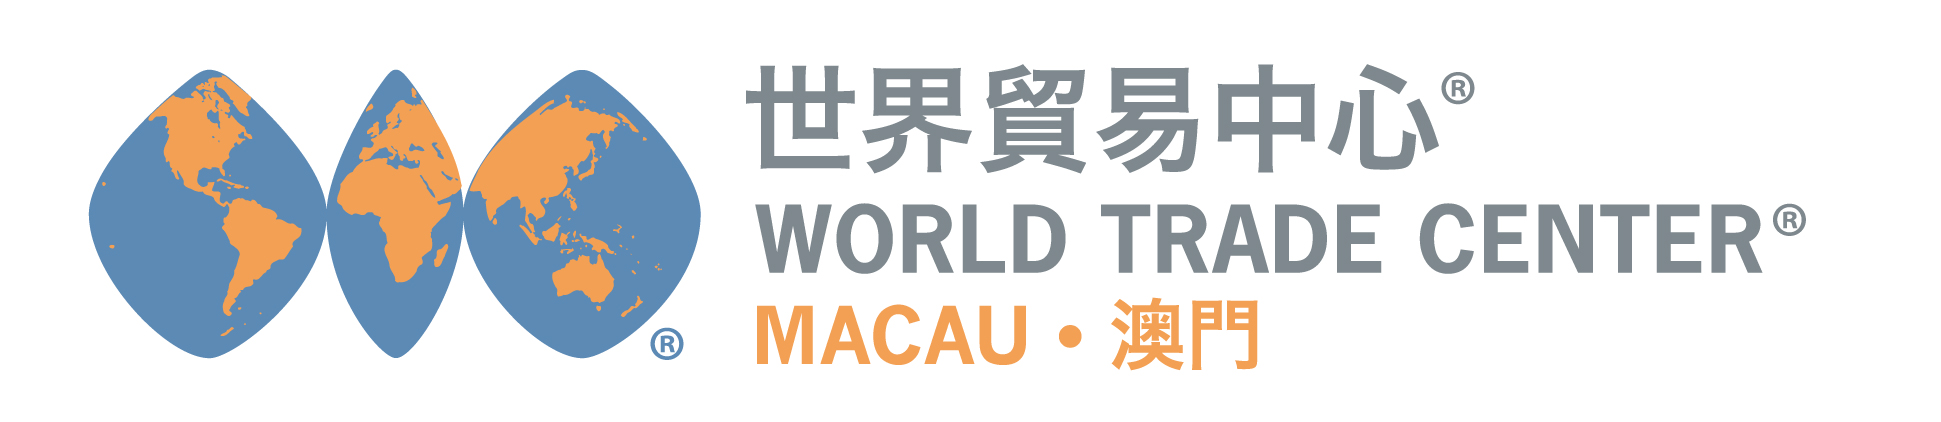 World Trade Center Macau